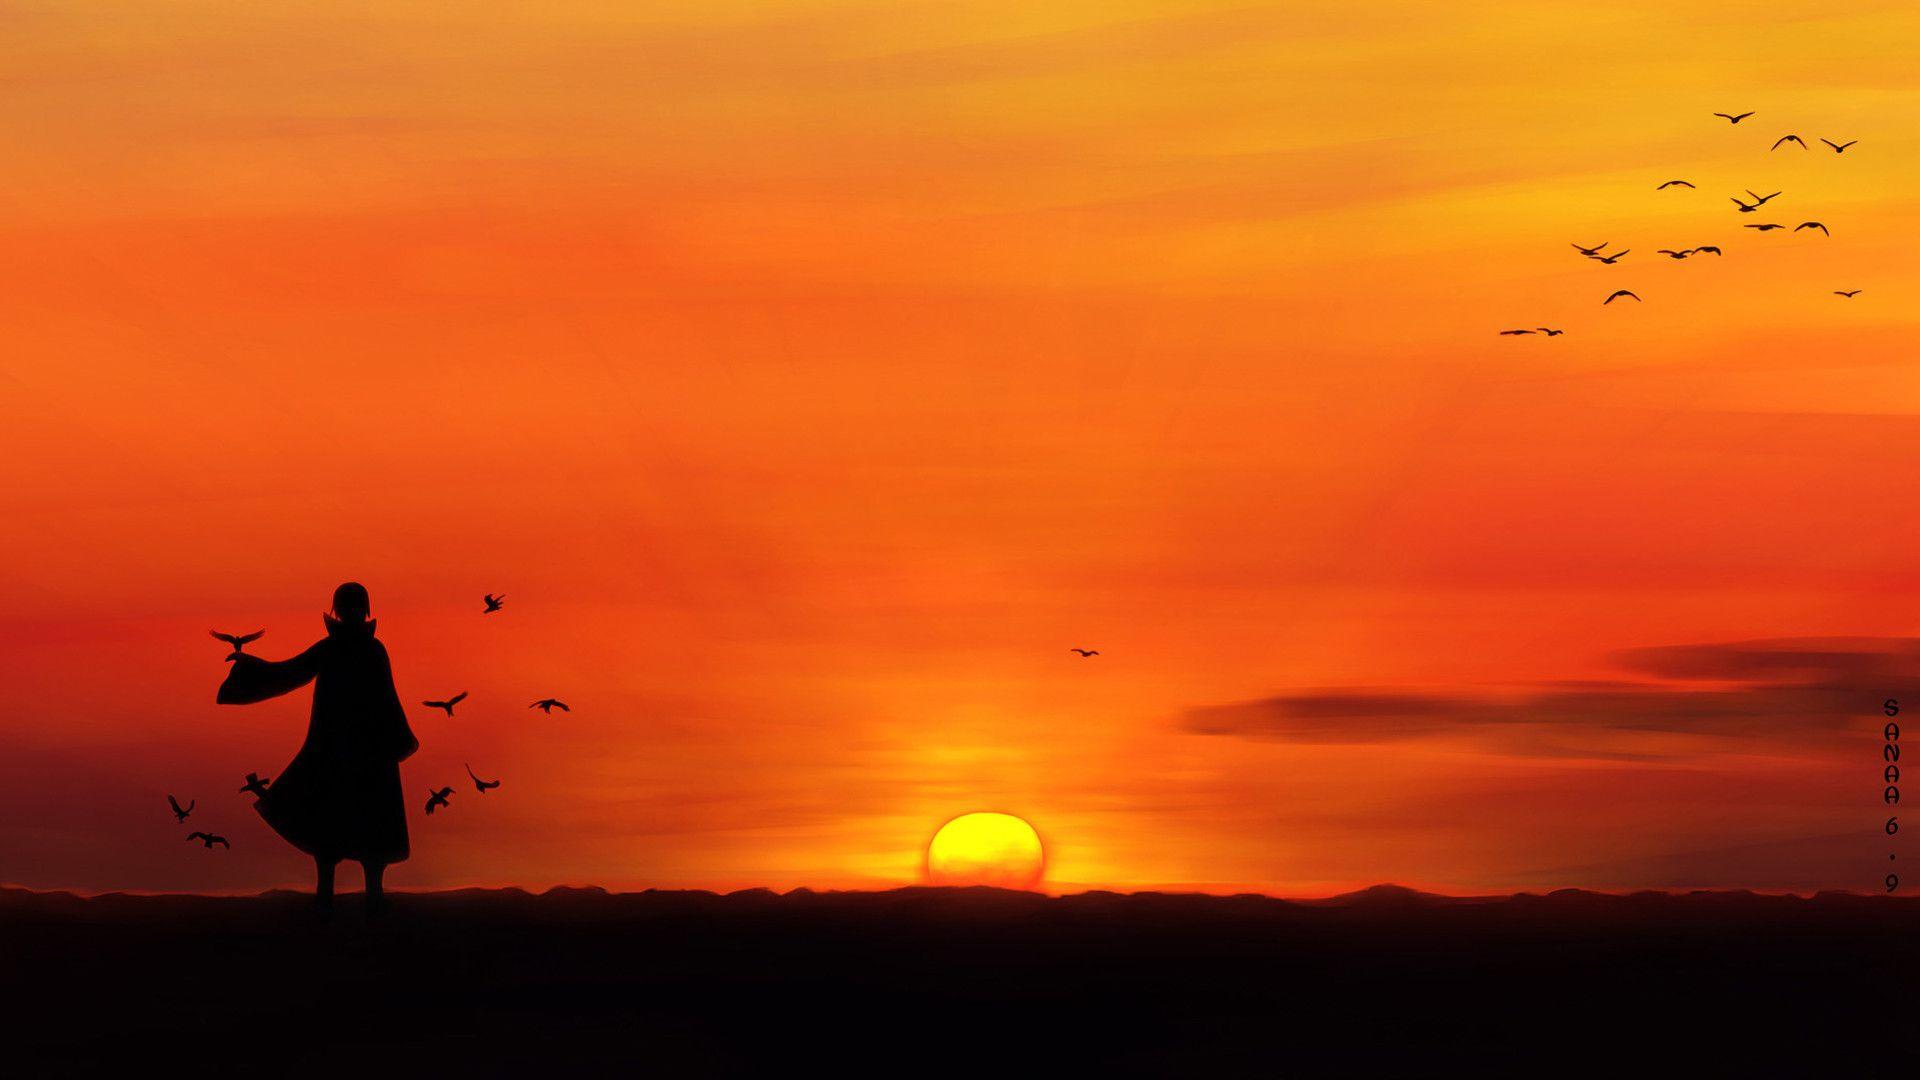 Itachi Uchiha Sunset Anime Landscape Wallpaper HD 3180